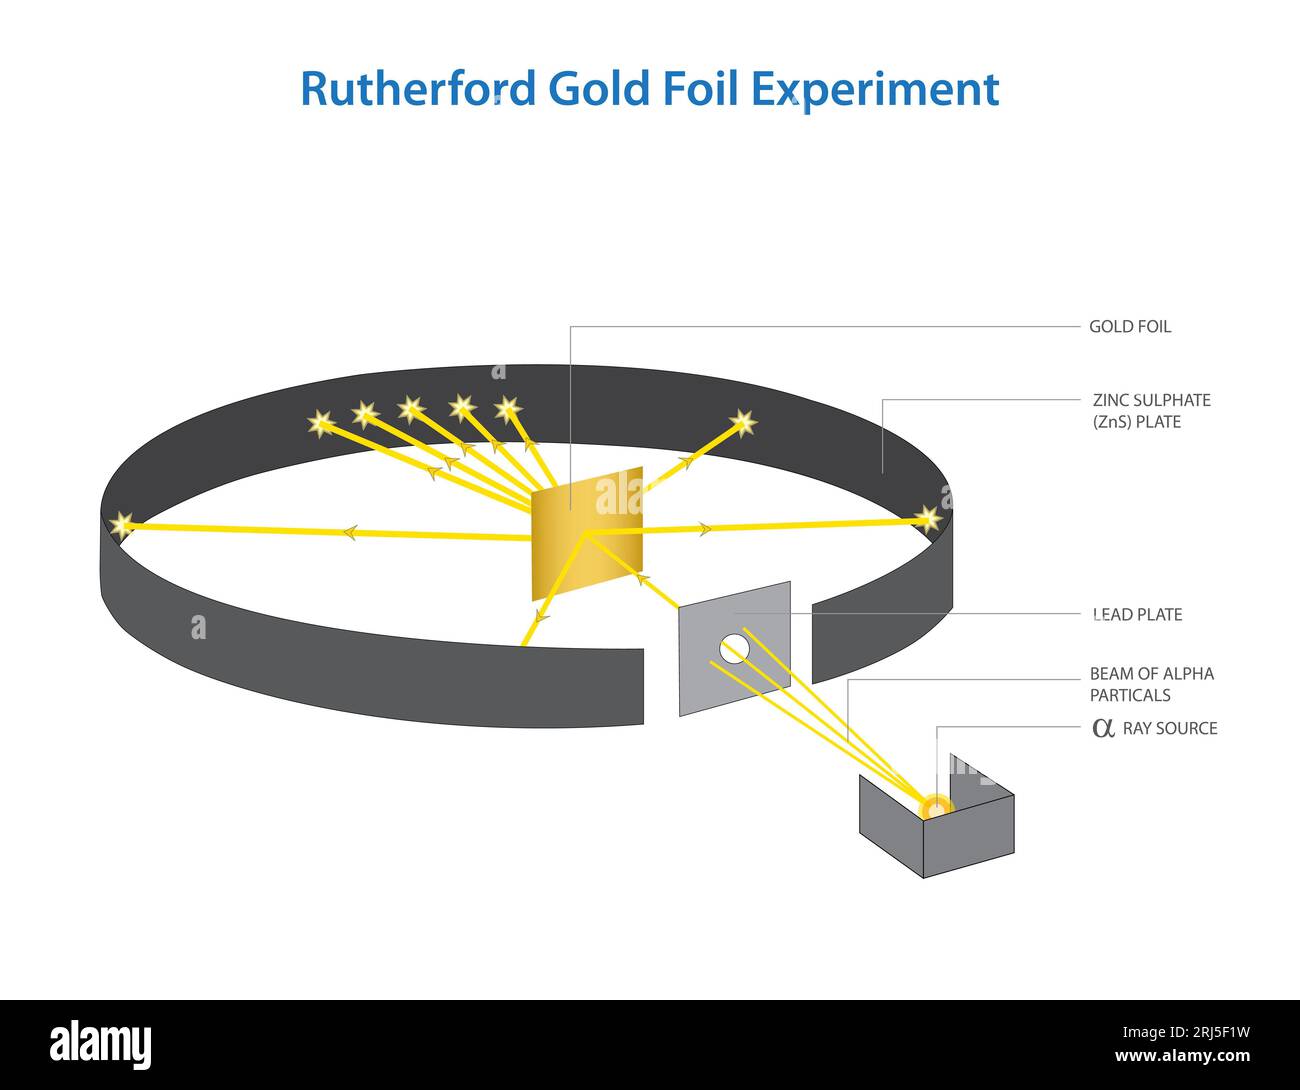 Cette image montre une expérience scientifique impliquant une feuille d'or, avec des diagrammes illustrant son fonctionnement Banque D'Images